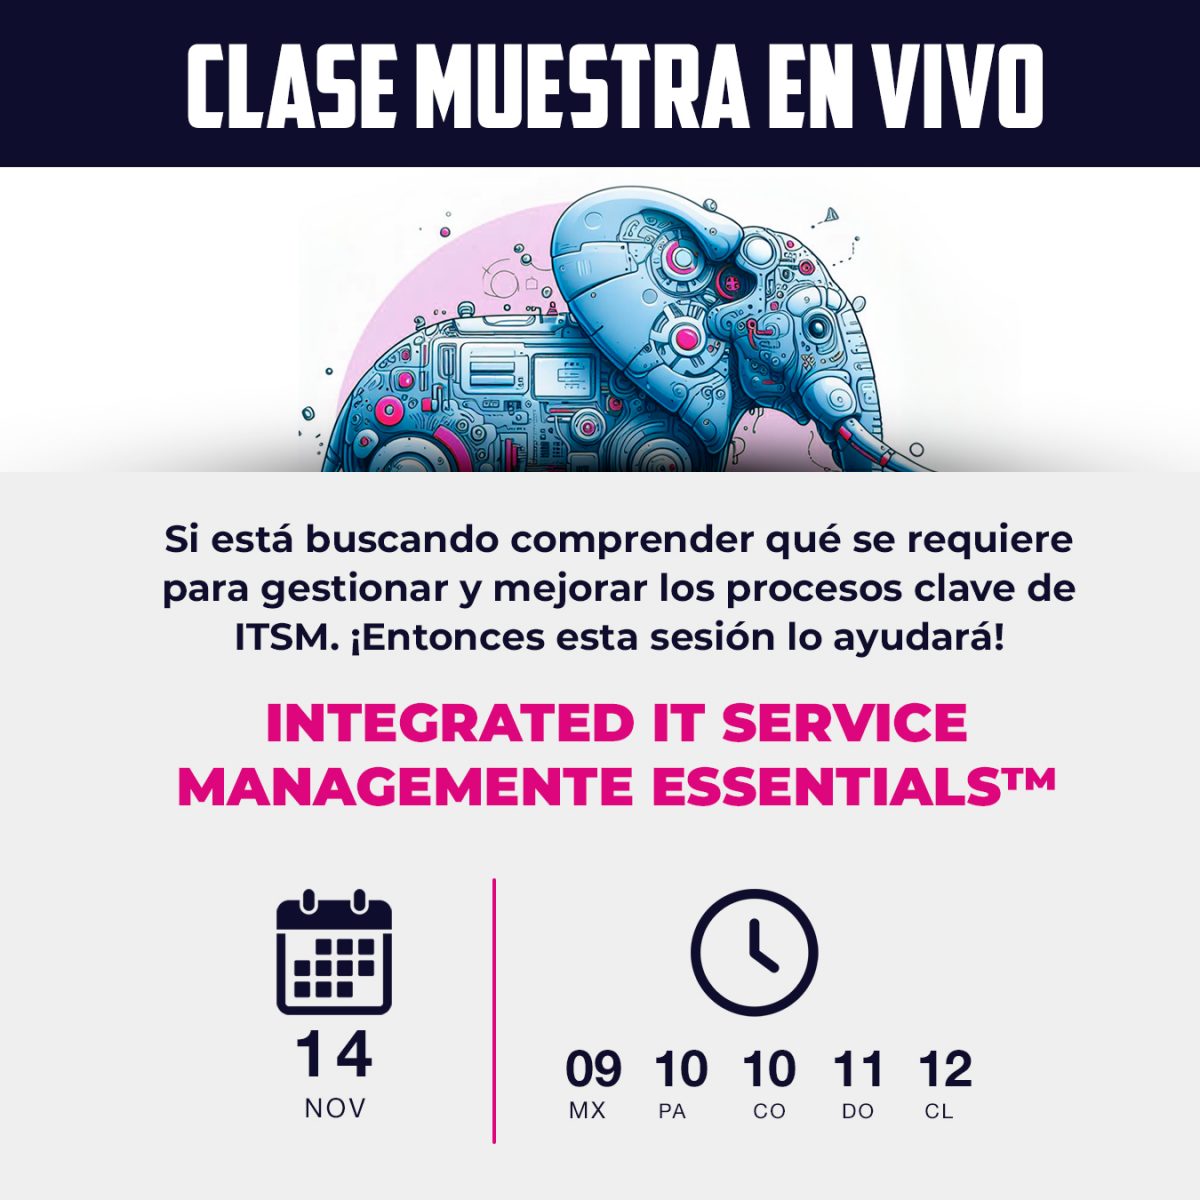 Clase muestra en vivo: Conozca nuestro nuevo curso «Integrated IT Service Management Essentials™»